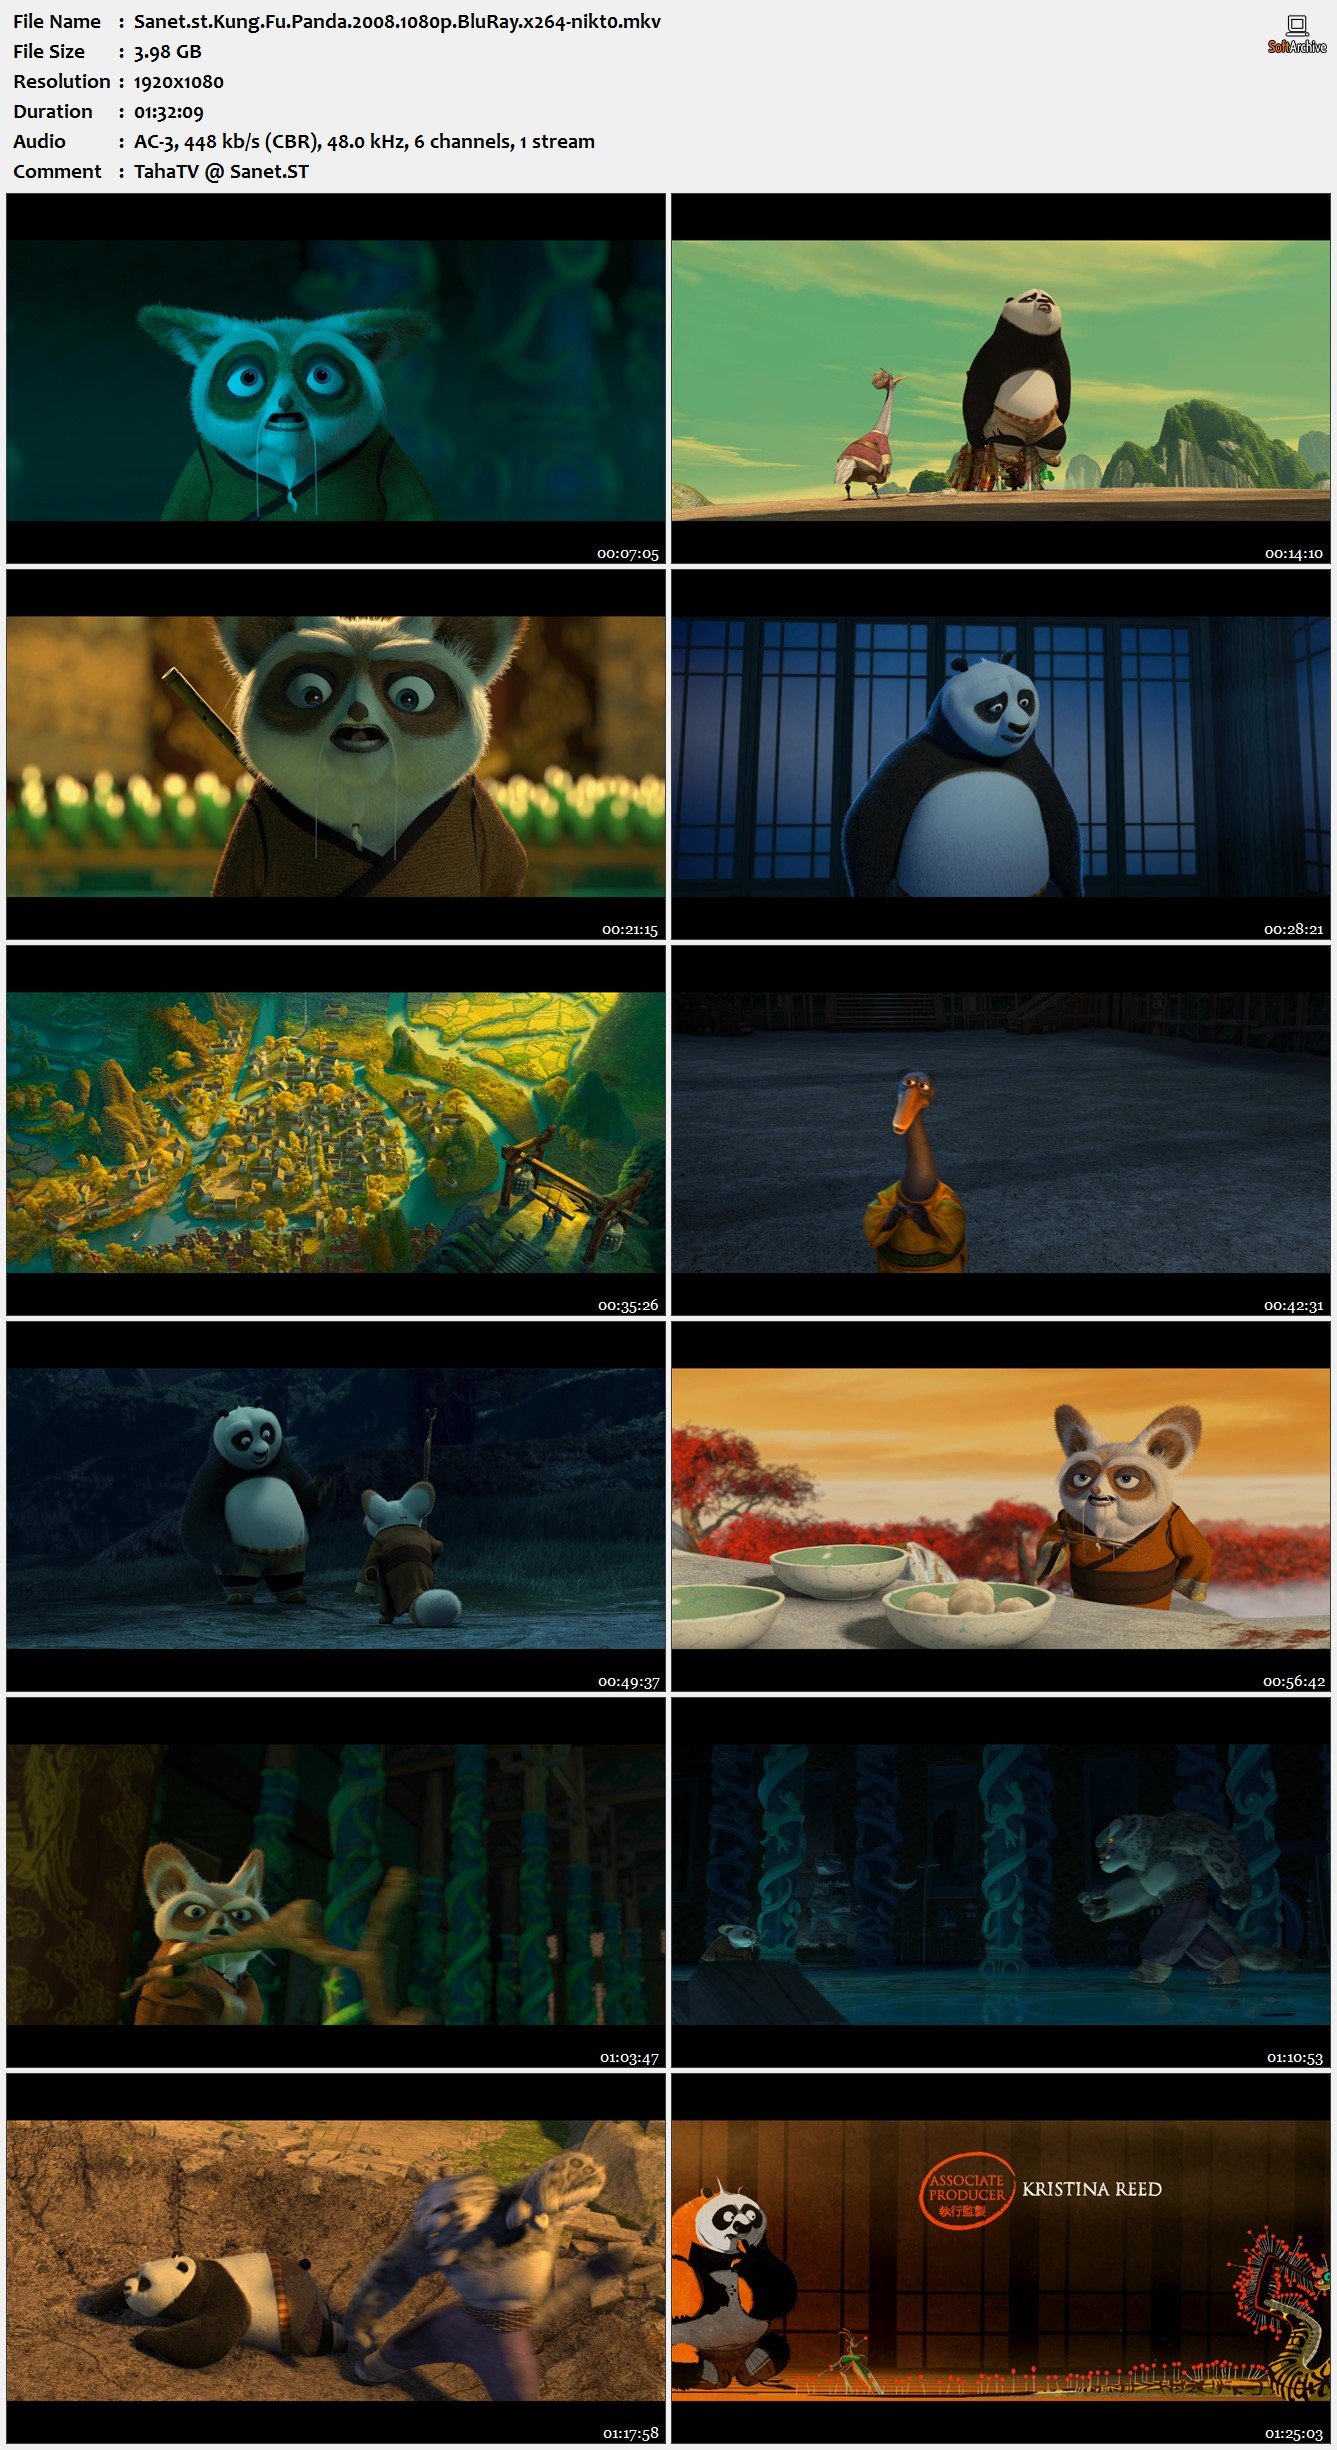 Kung Fu Panda 2008 1080p Bluray X264 Nikt0 Softarchive 1581